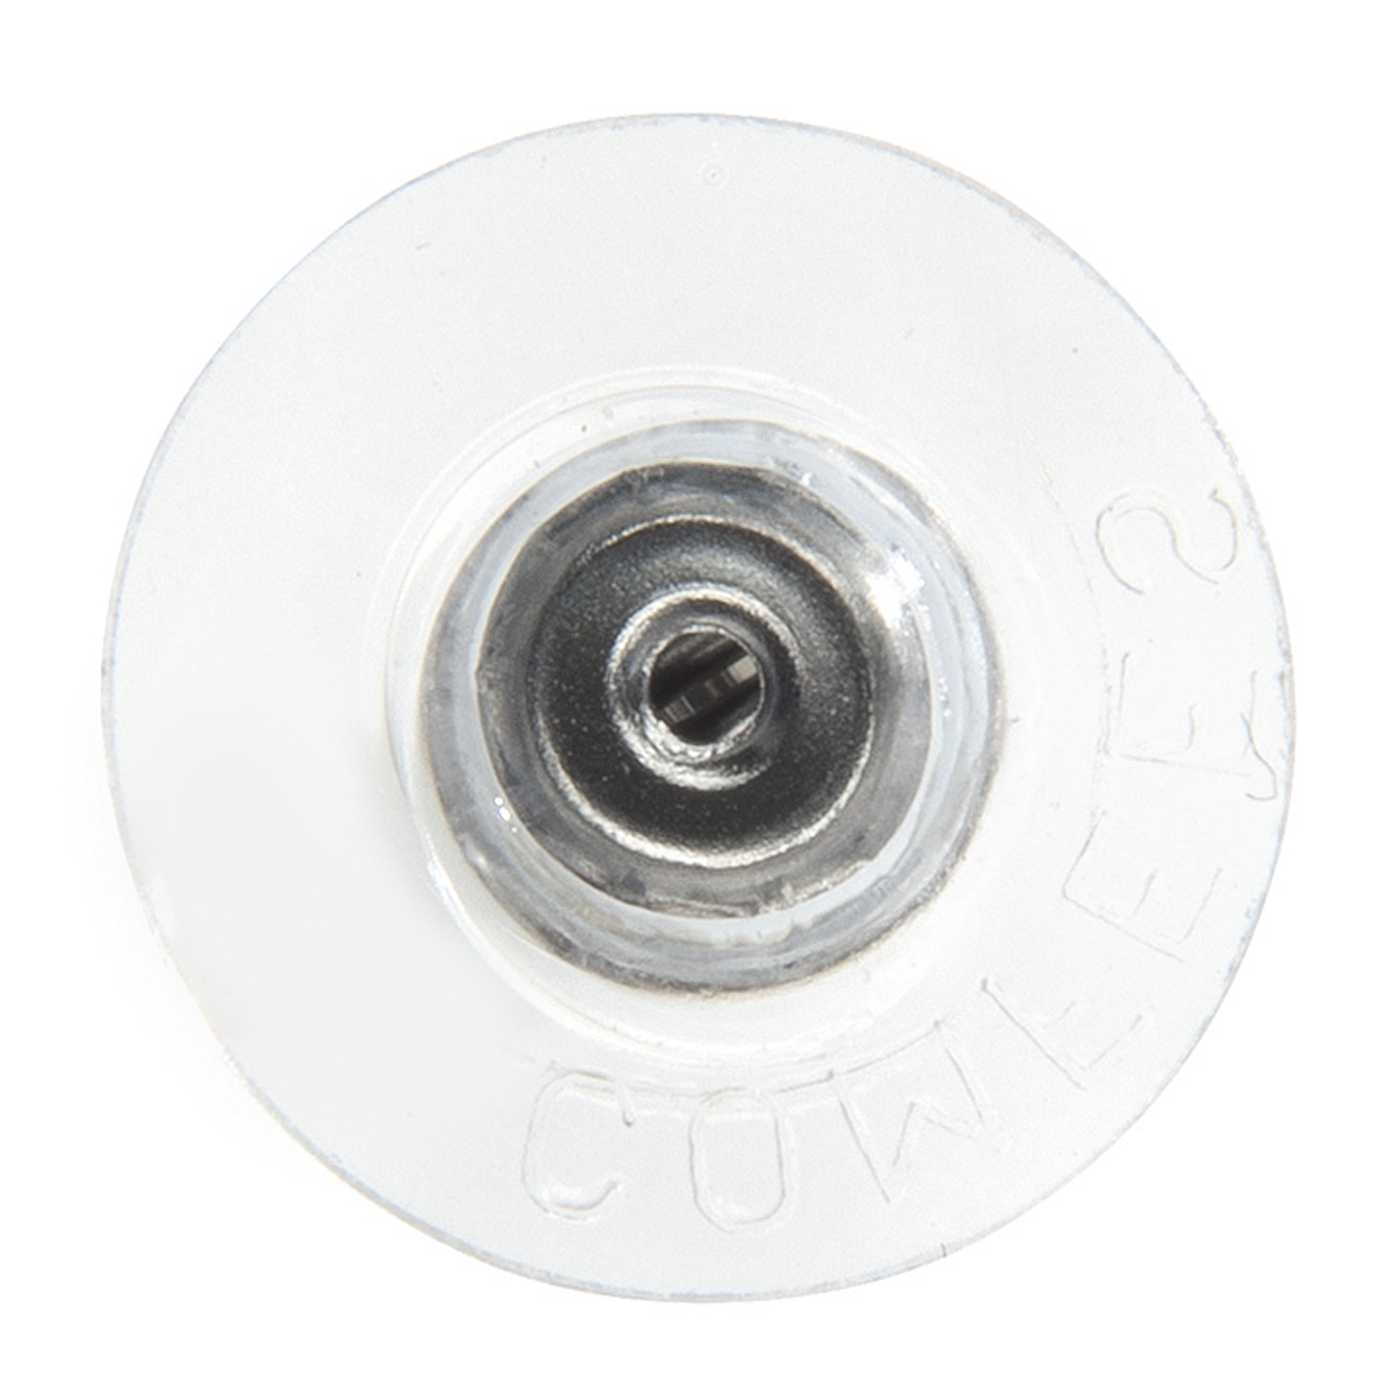 Ohr-Disc, Kunststoff, mit weißer Metallmutter, ø 12 mm - 1 Stück